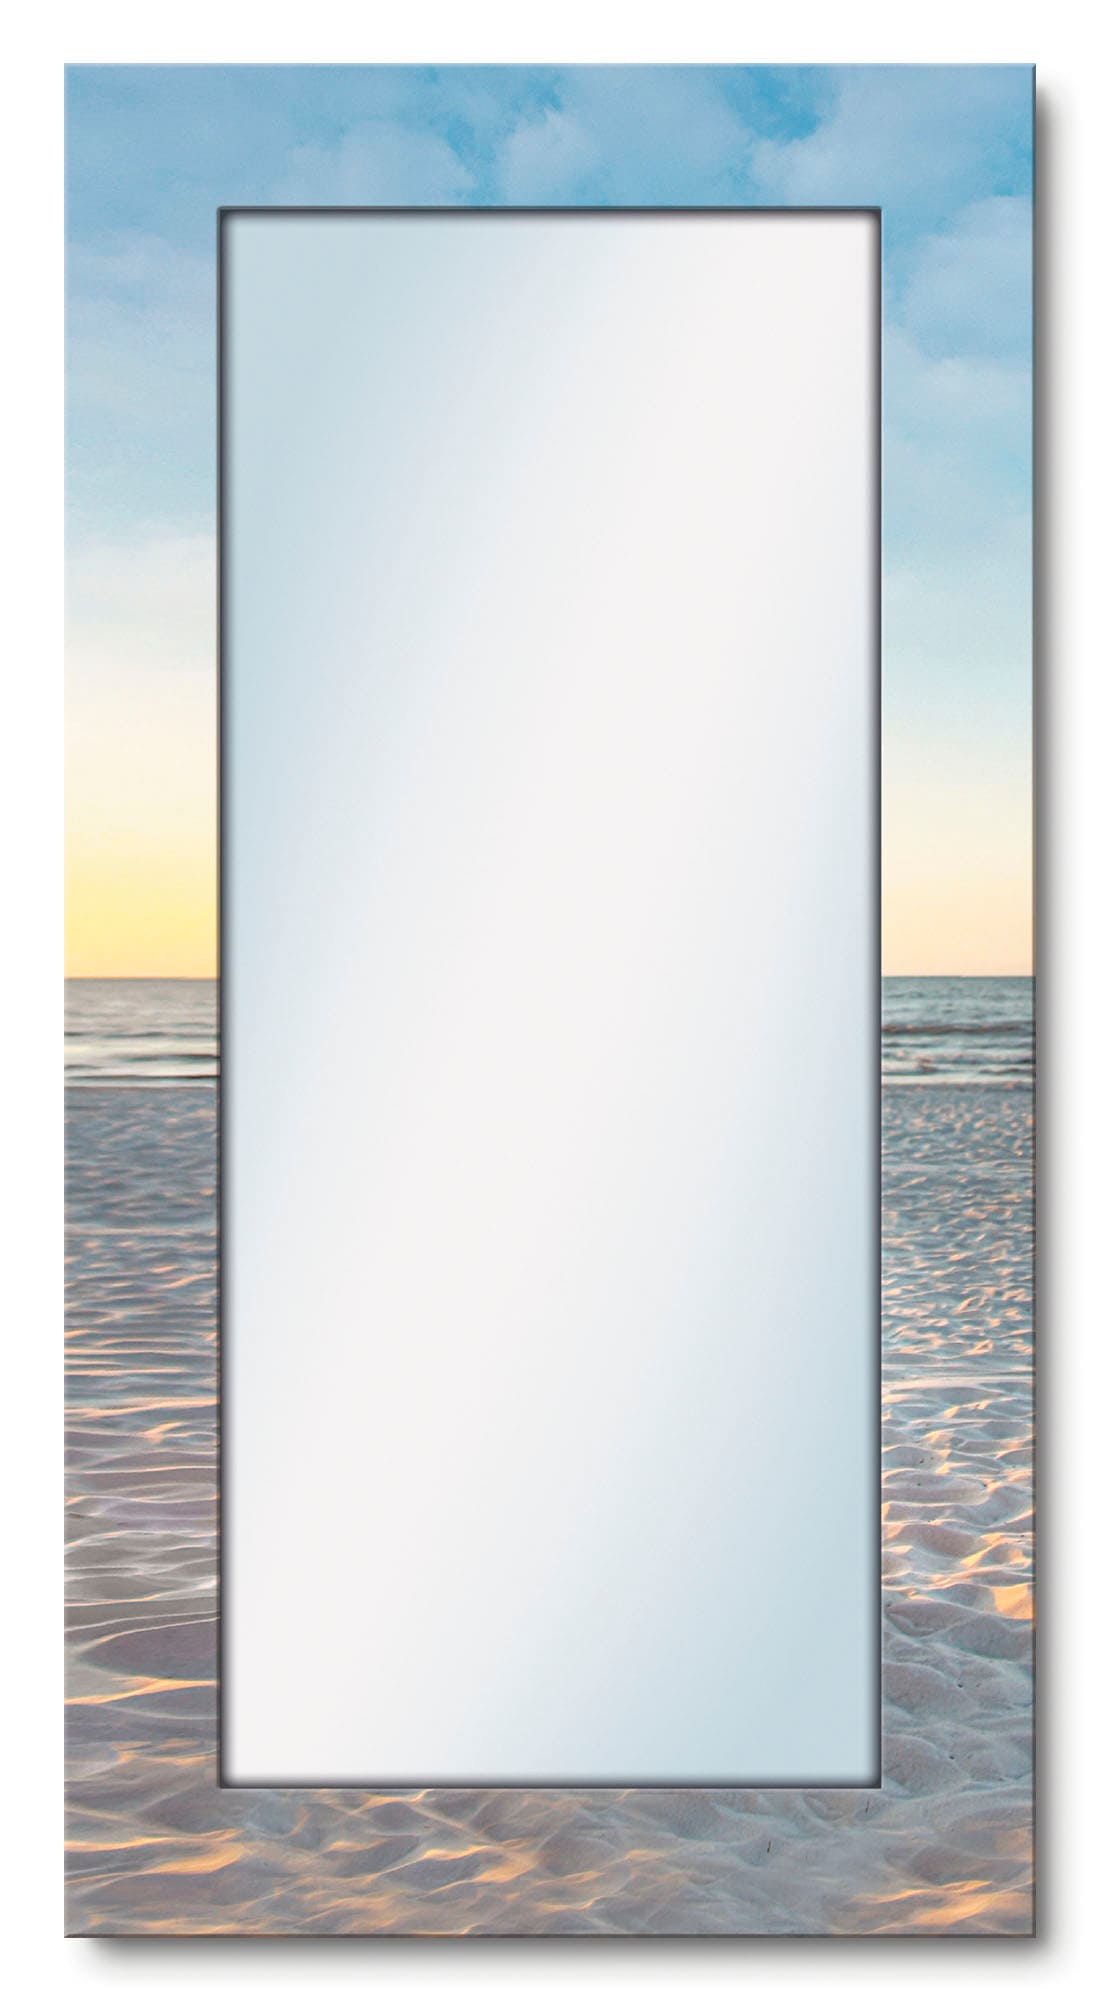 Artland Dekospiegel »Ostsee7 - Strandkorb«, gerahmter Ganzkörperspiegel, Wandspiegel, mit Motivrahmen, Landhaus